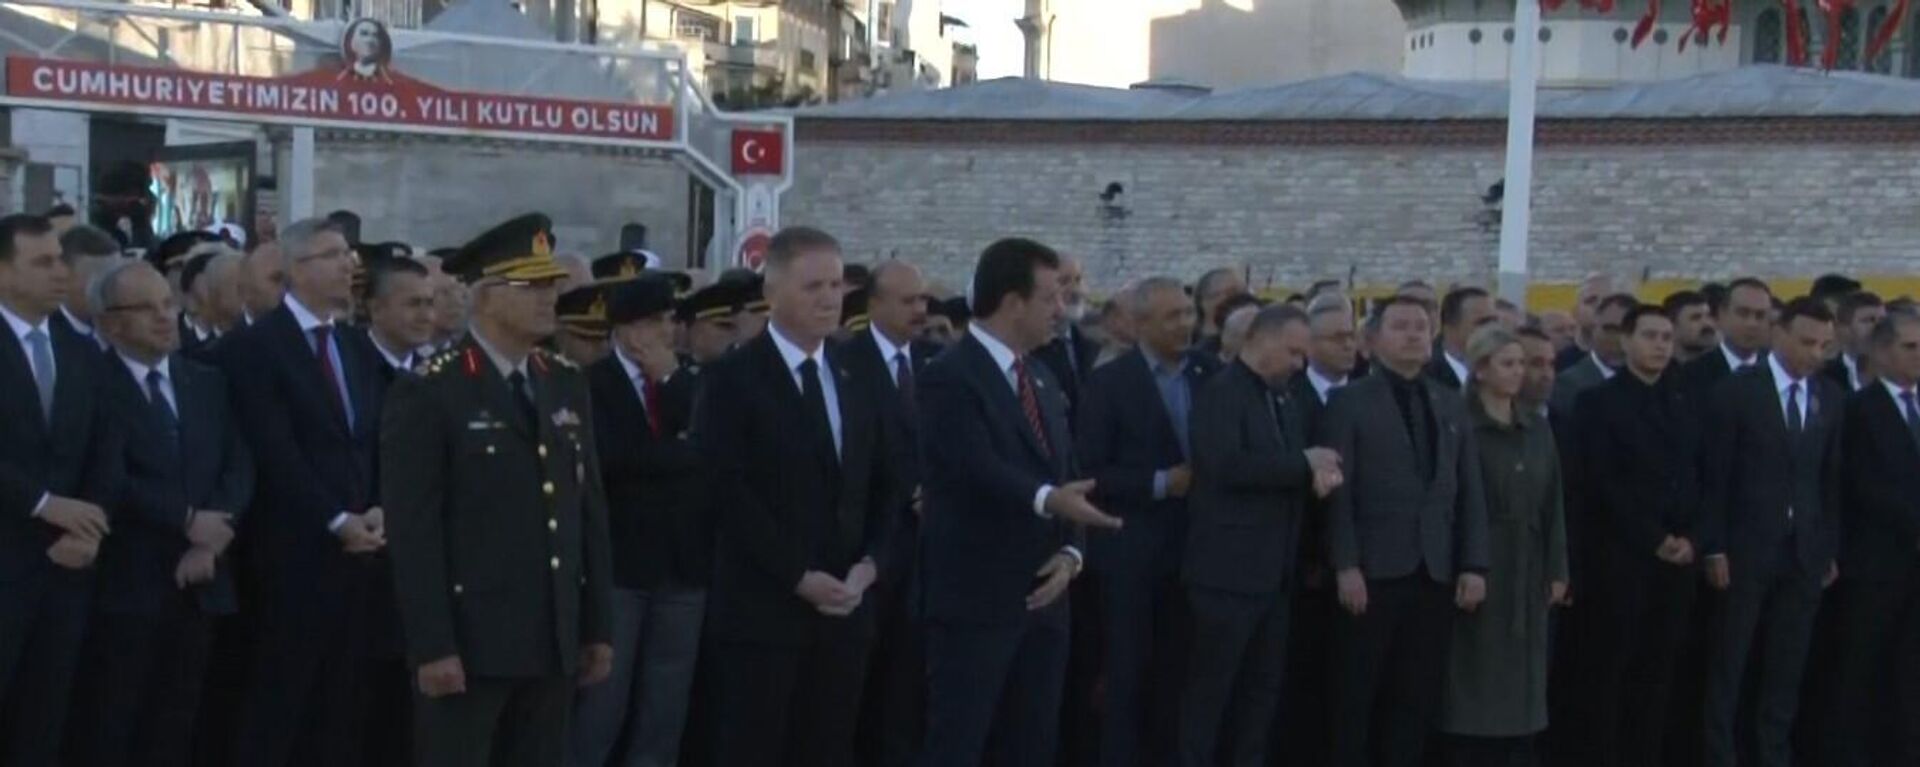 10 Kasım Taksim’deki törende CHP çelenk getirmeyi unuttu - Sputnik Türkiye, 1920, 10.11.2023